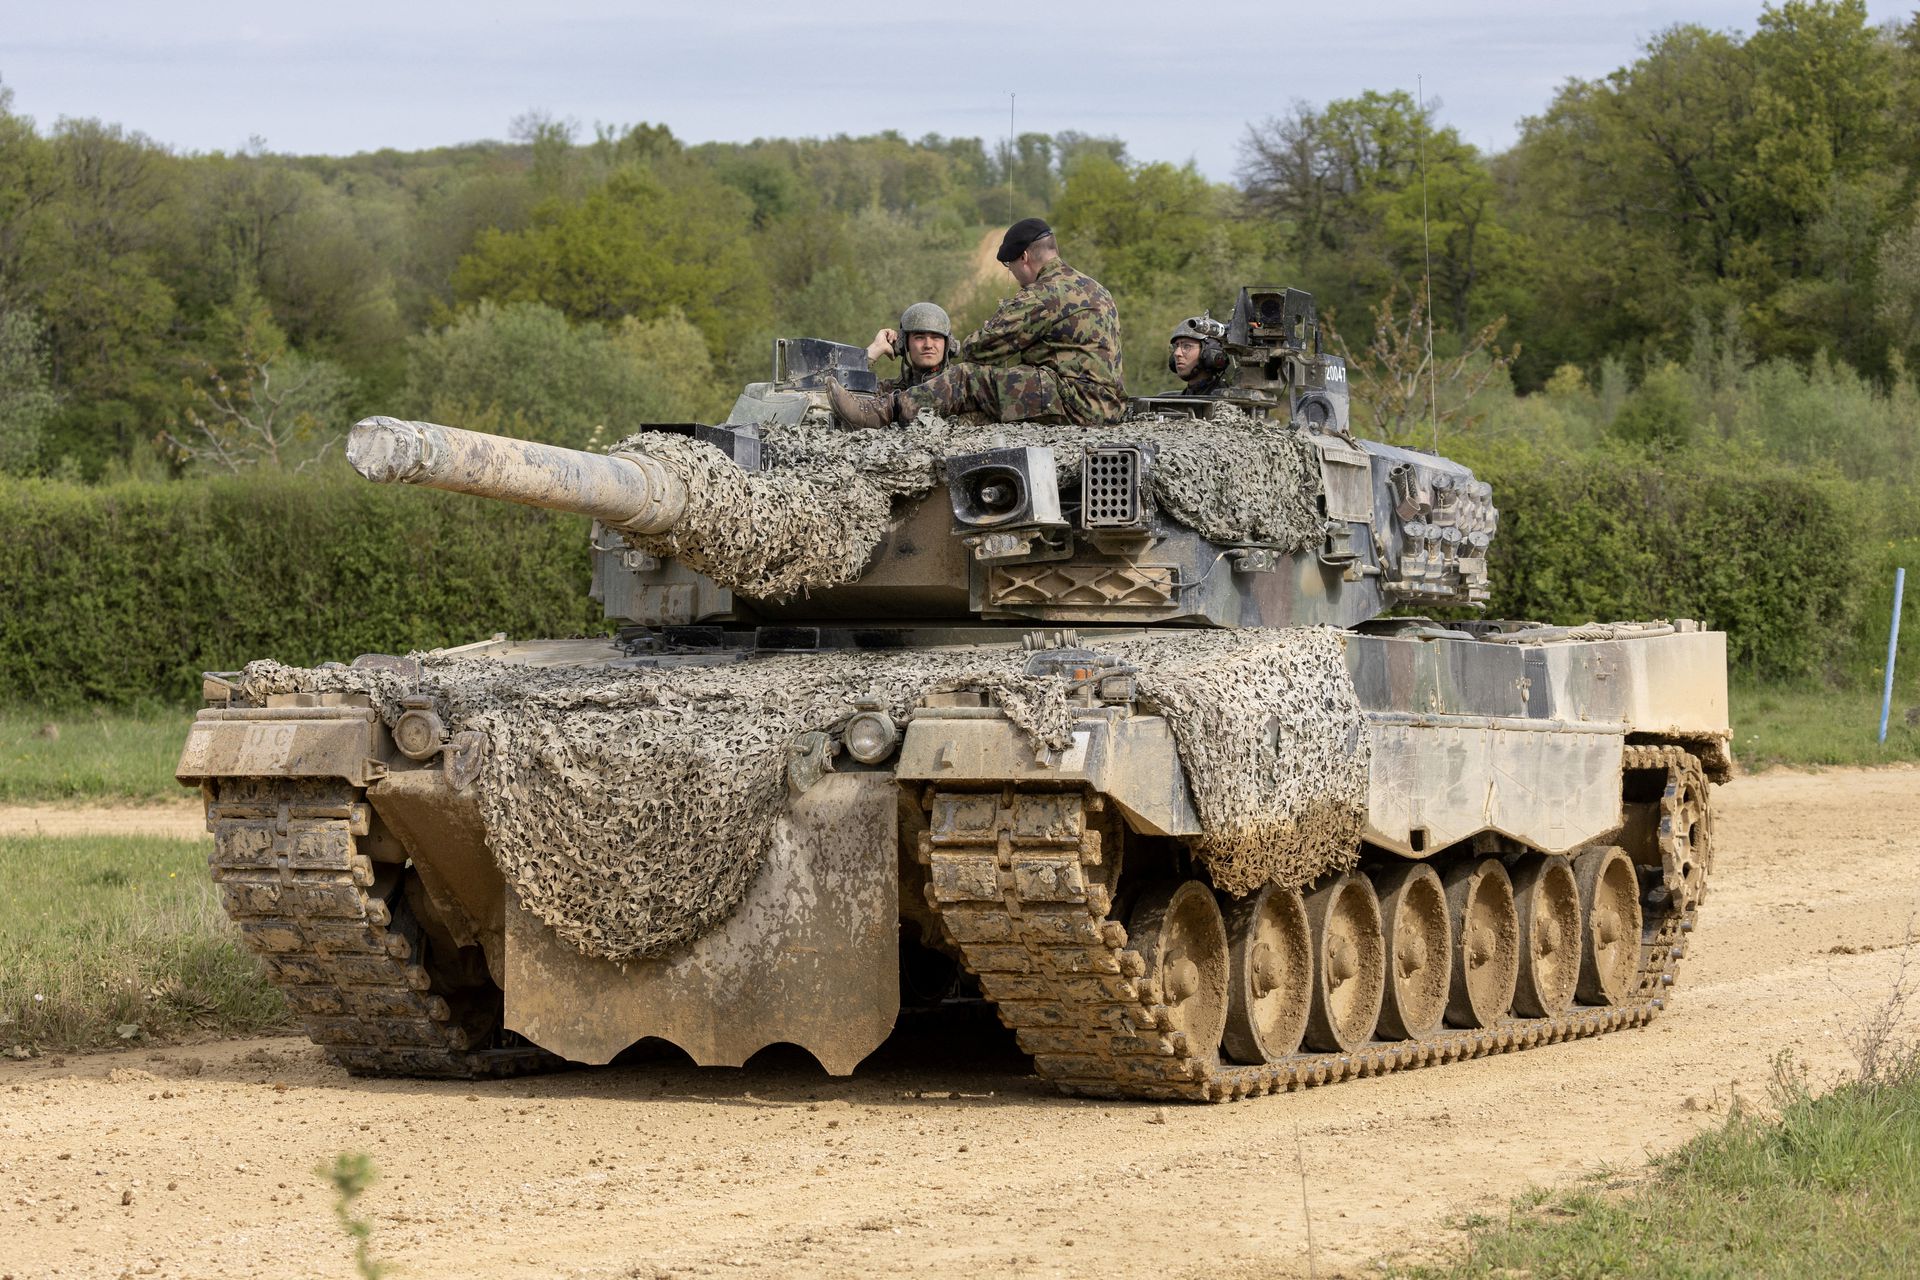 Zwitserland verkoopt 25 Leopard 2 tanks aan Duitsland en geeft ze mogelijk door aan Oekraïne